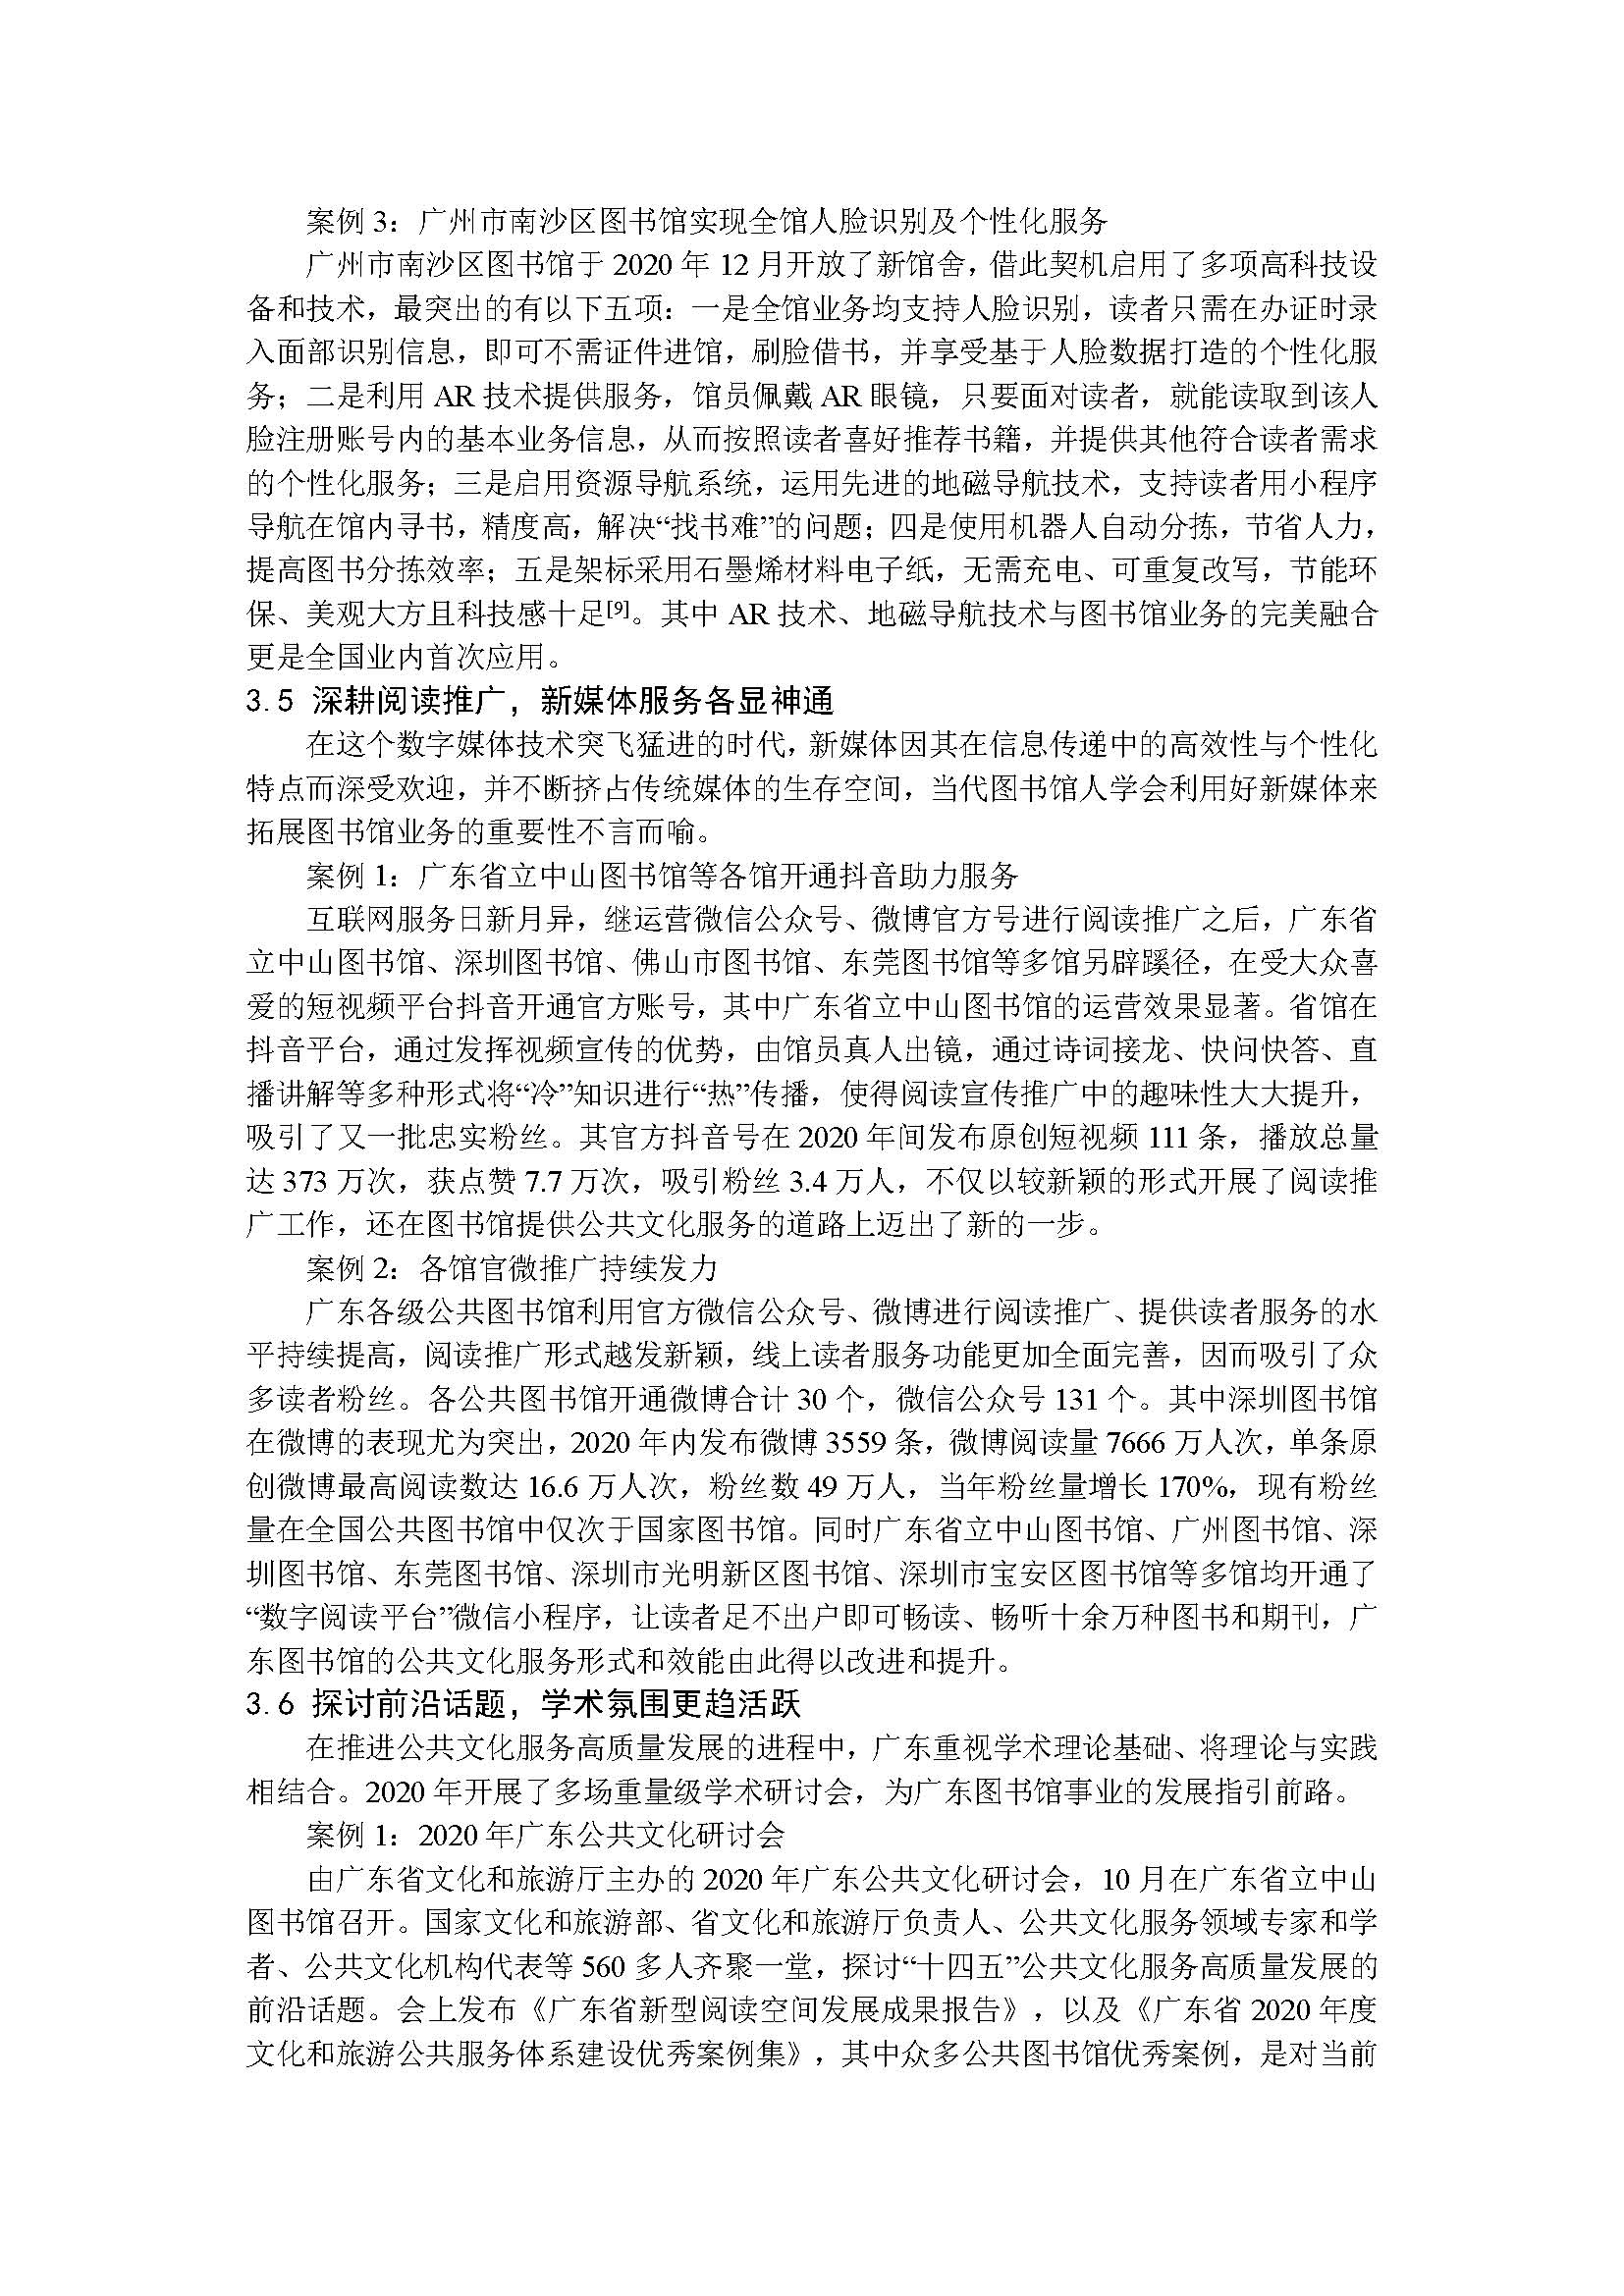 2020年广东省公共图书馆事业发展年度报告_页面_10.jpg